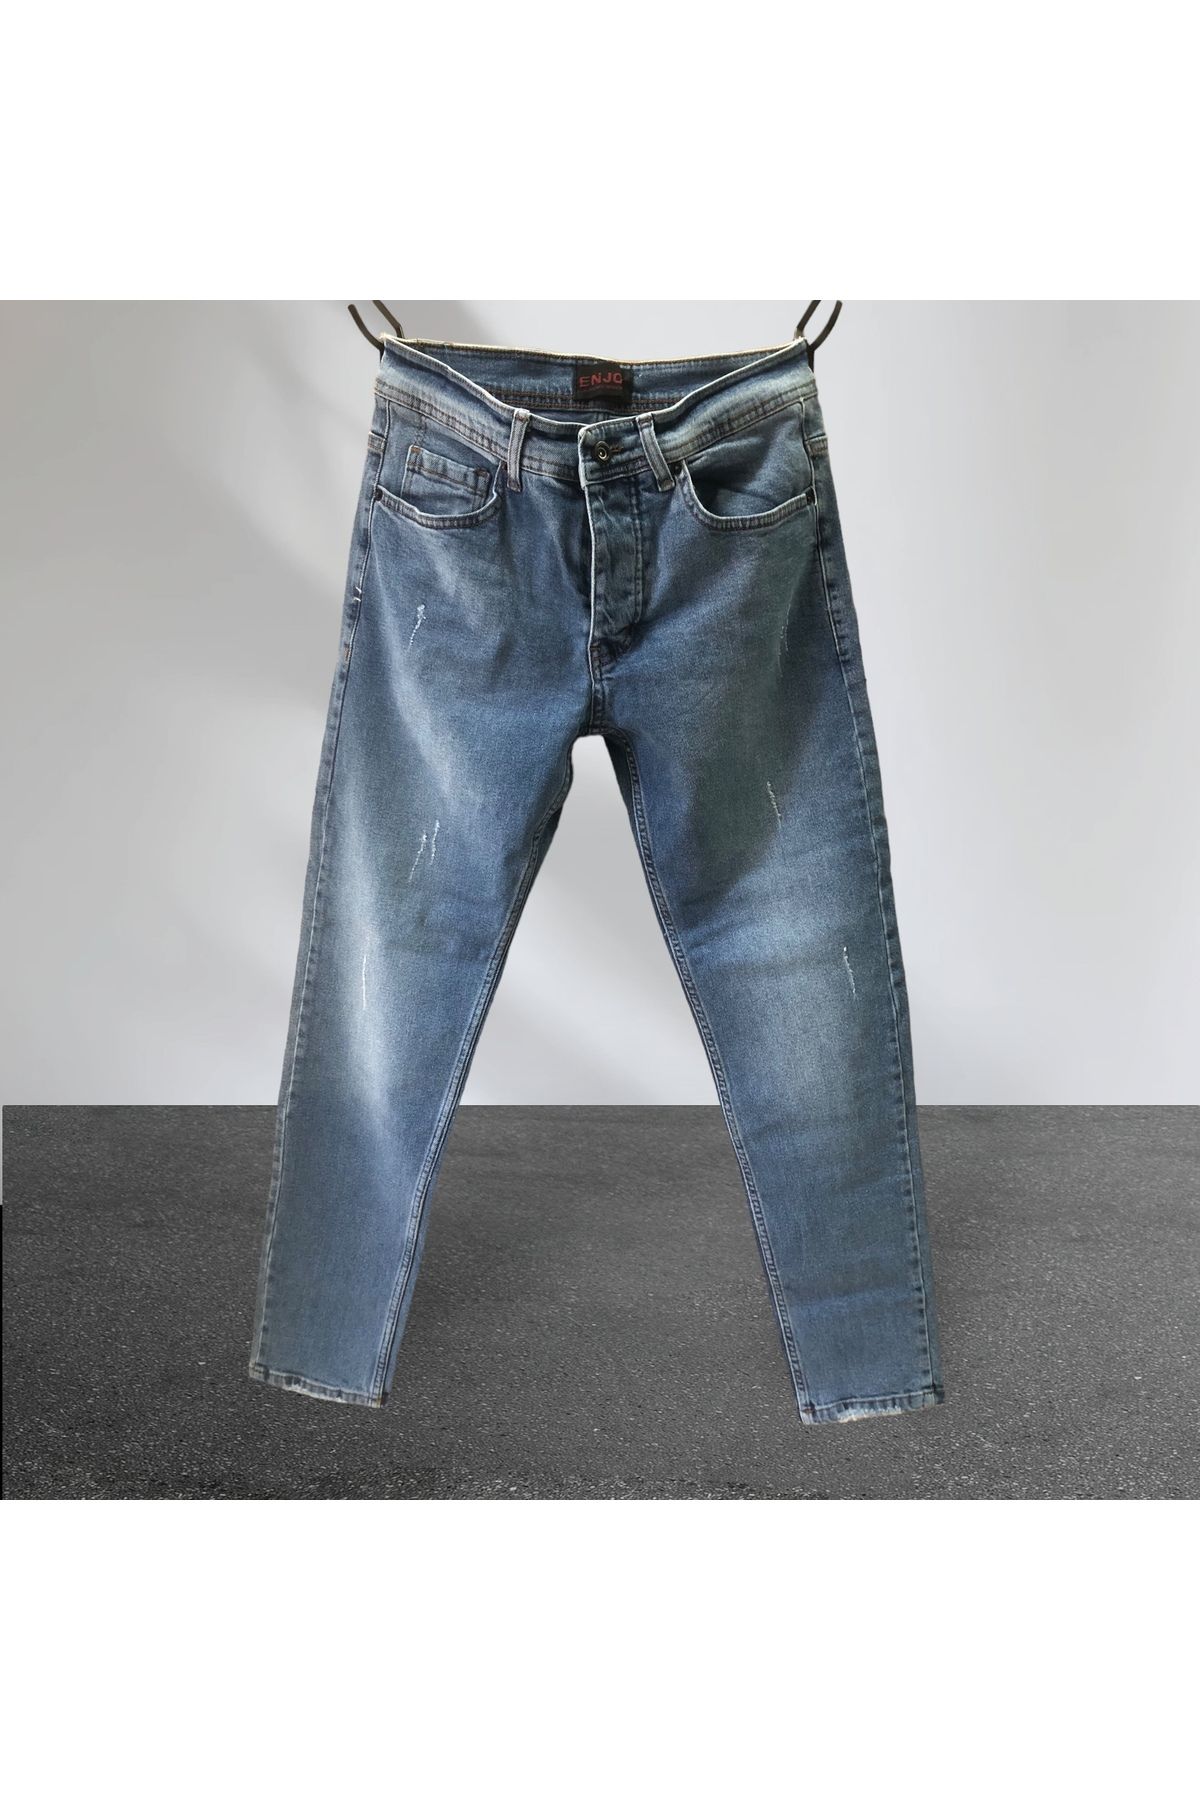 Enjoy Kot Jeans Tırnaklı Yıpratmalı Slim Fit Ligralı